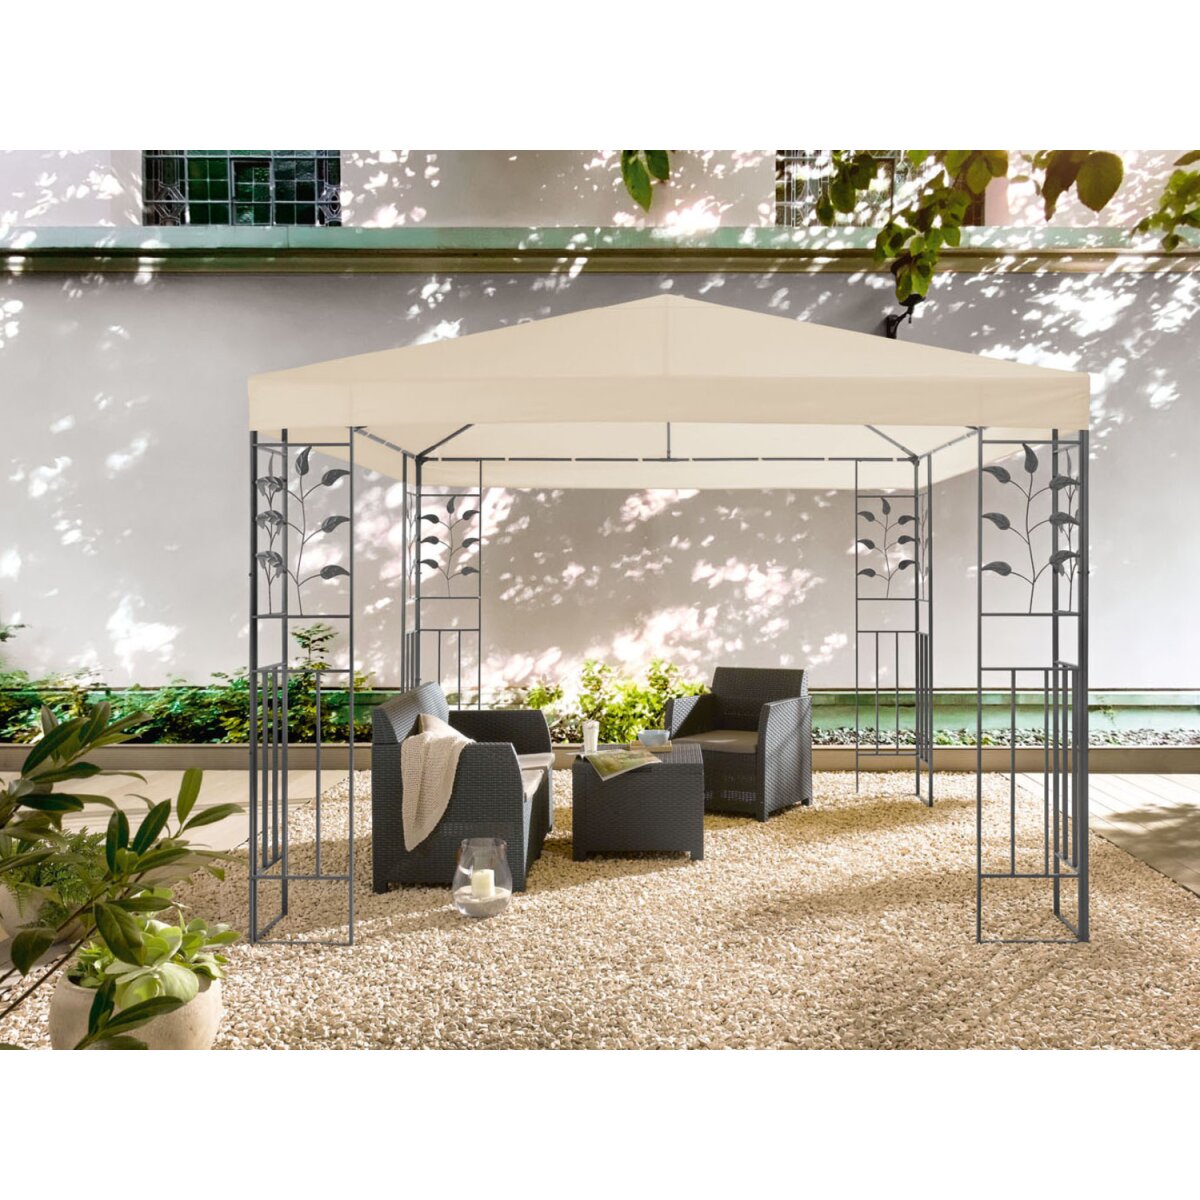 LIVARNO home Pavillon, 3 x 3 m, mit Stahlgestell, beige - B-Ware sehr gut,  153,99 €